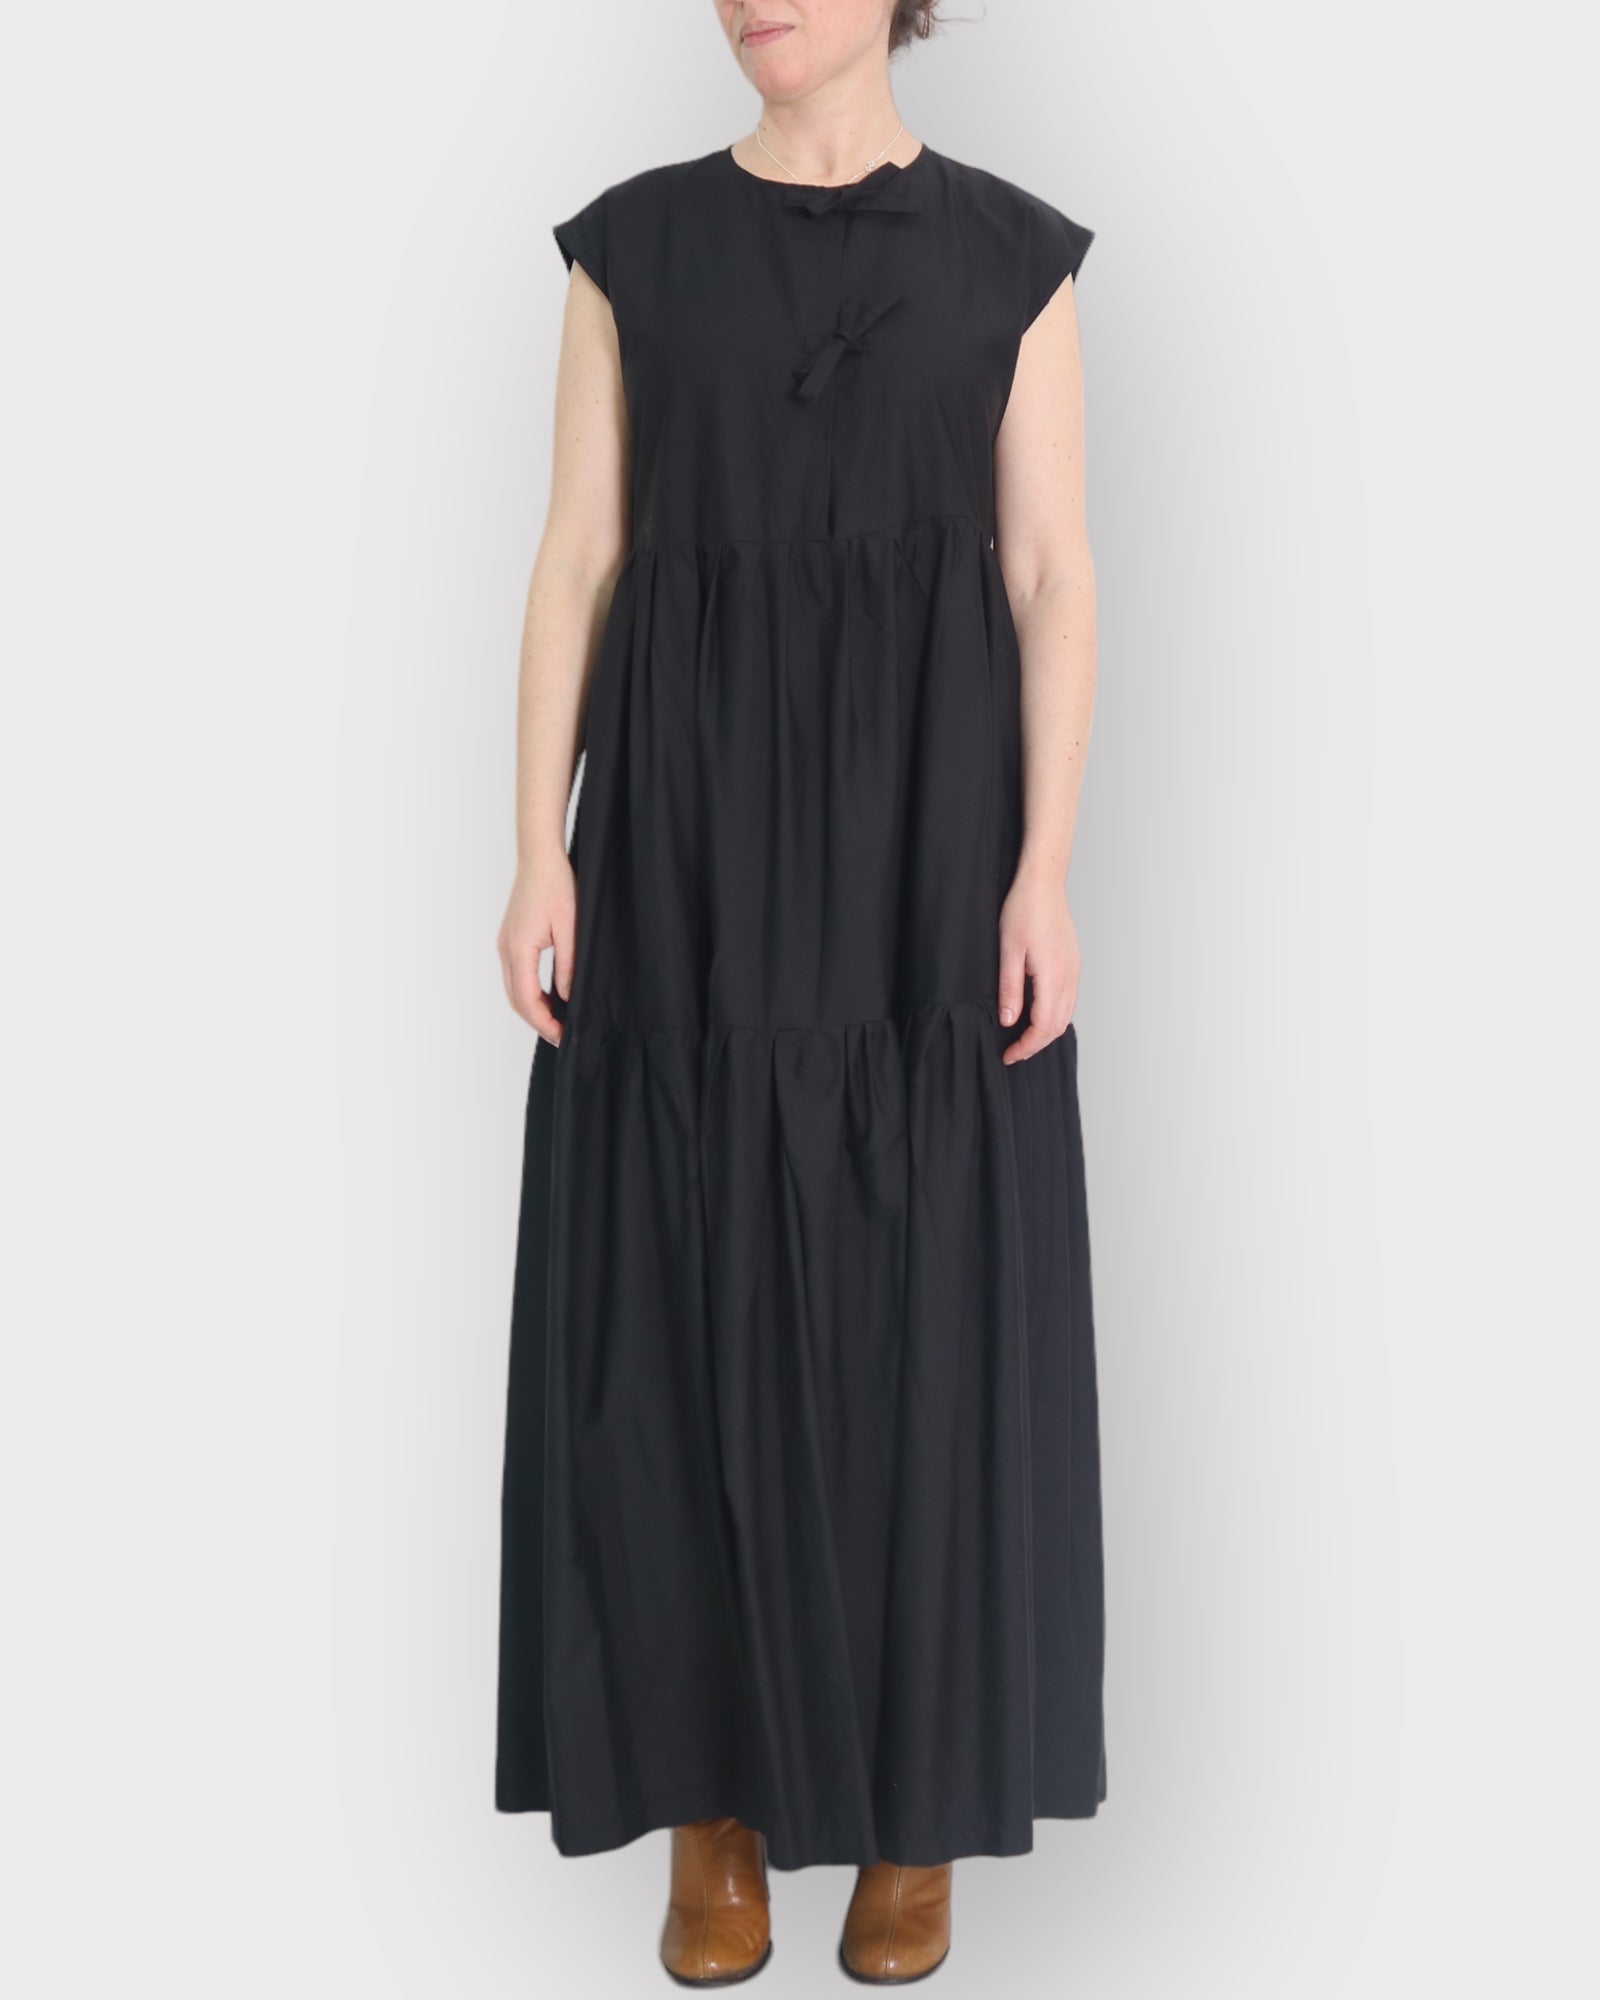 tia_maxi_dress #color_black